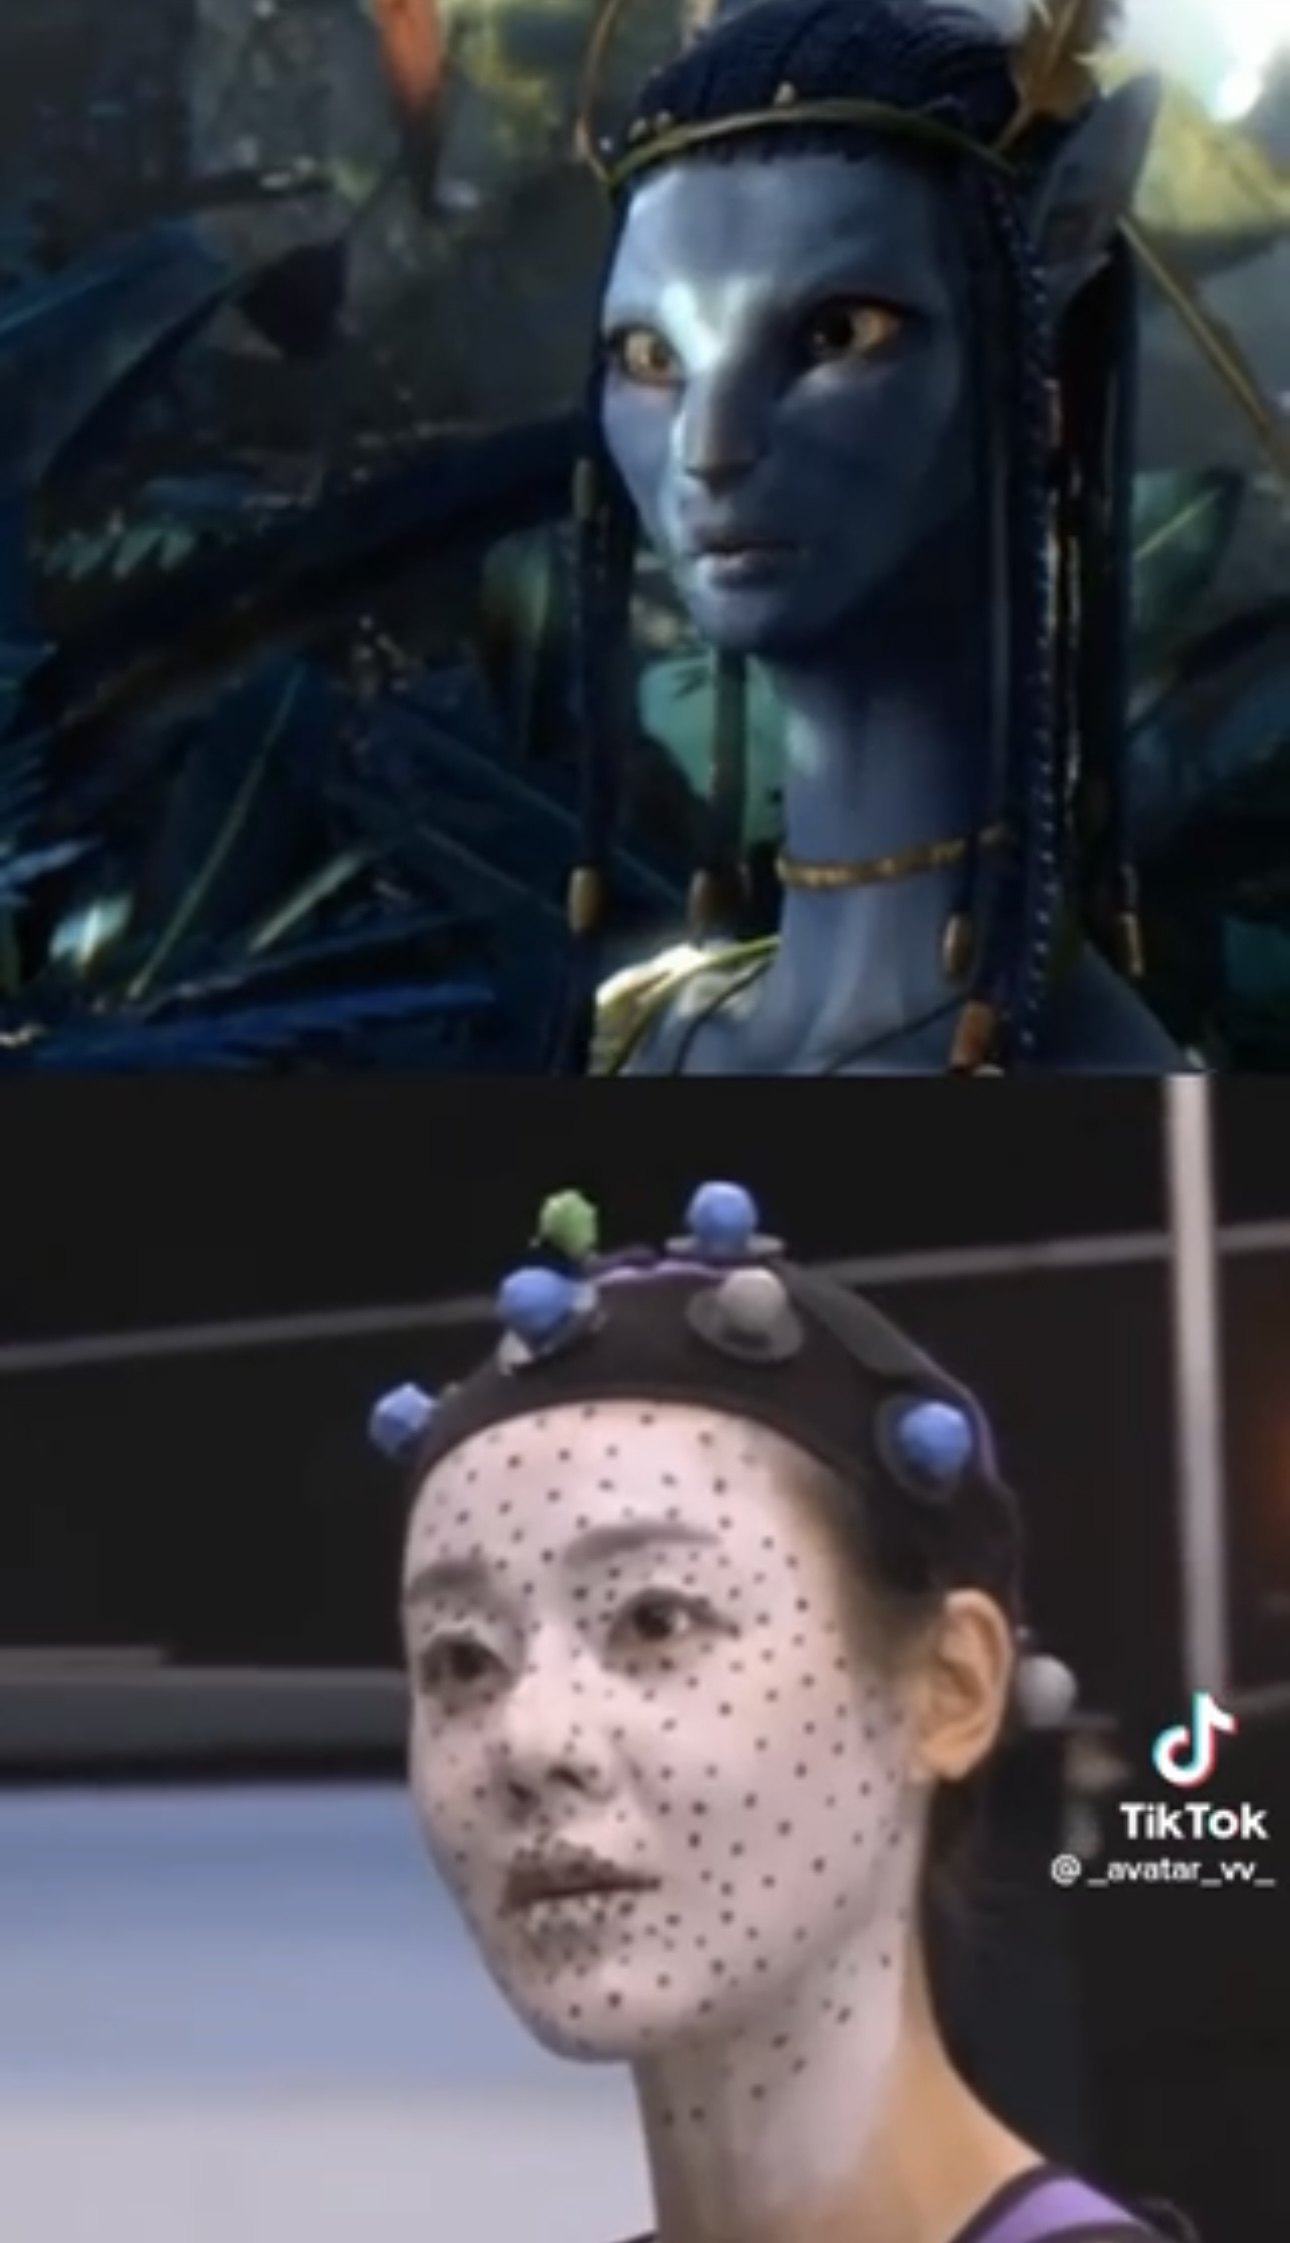 Mỹ nhân Hàn từng đóng nữ chính bom tấn Avatar: Diễn xuất xúc động, tiếc rằng không thể góp mặt chính thức - ảnh 2